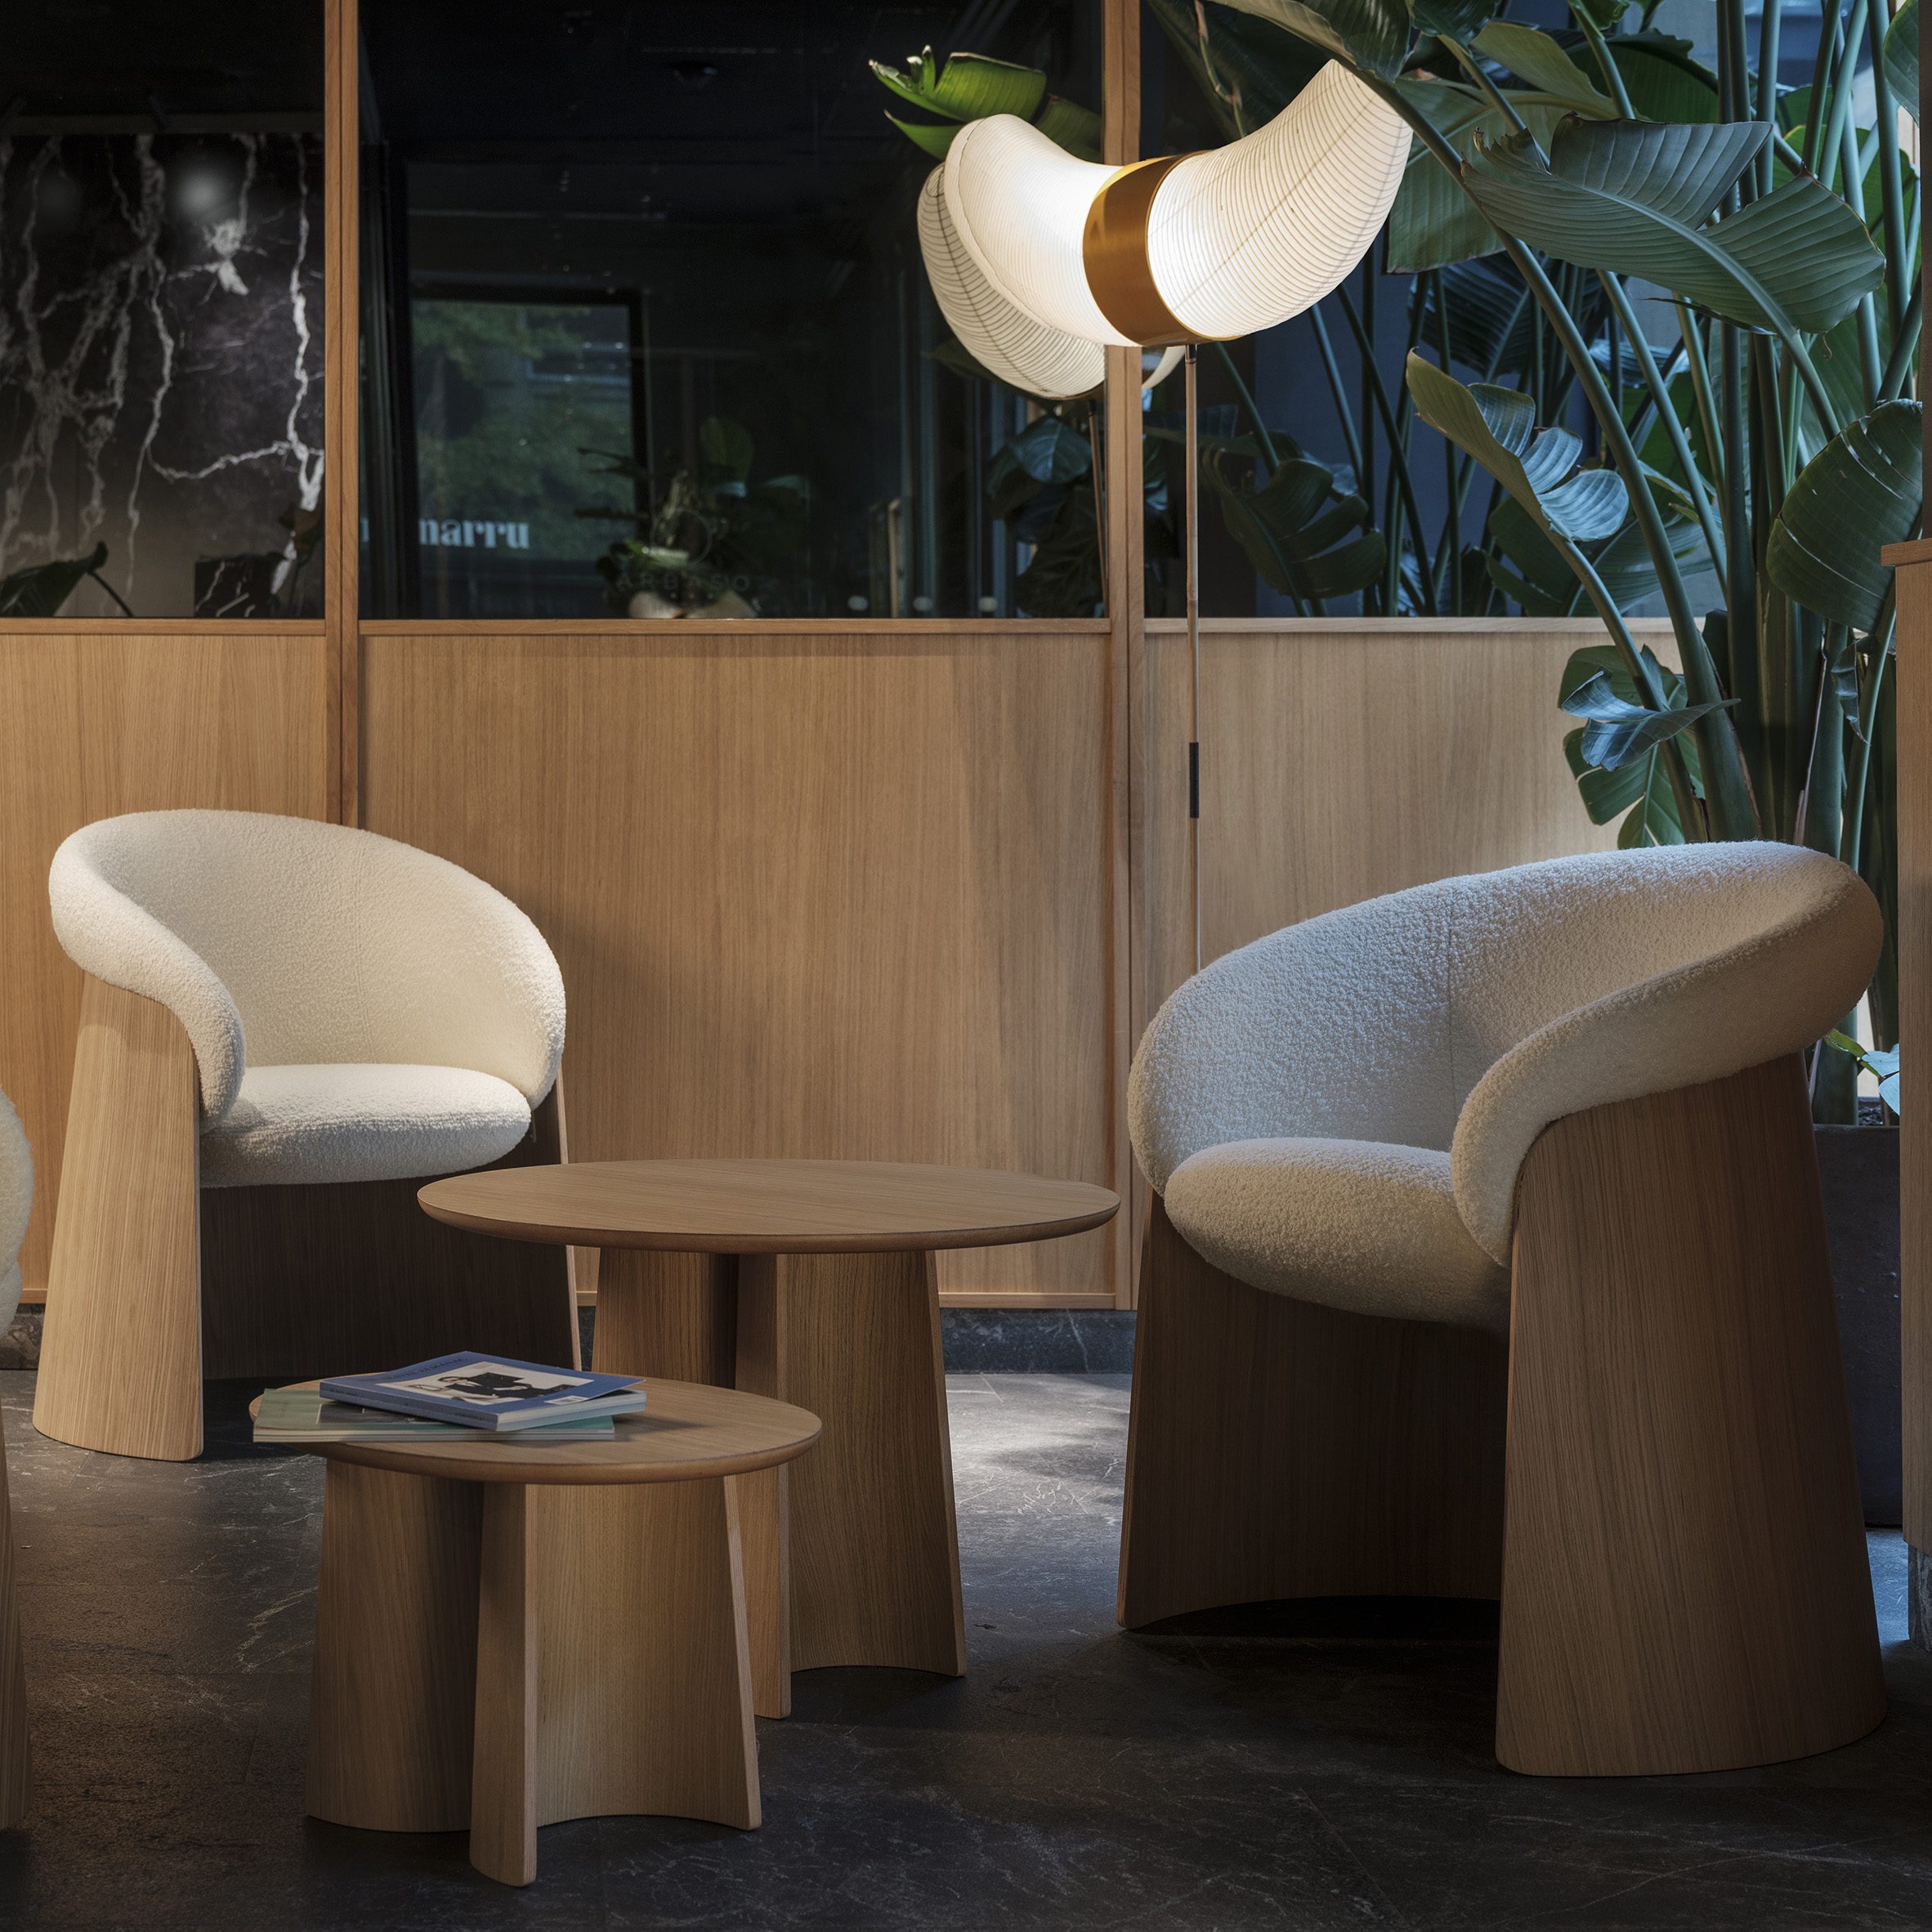 Ginger chairs by Sebastian Herkner for Ondaretta